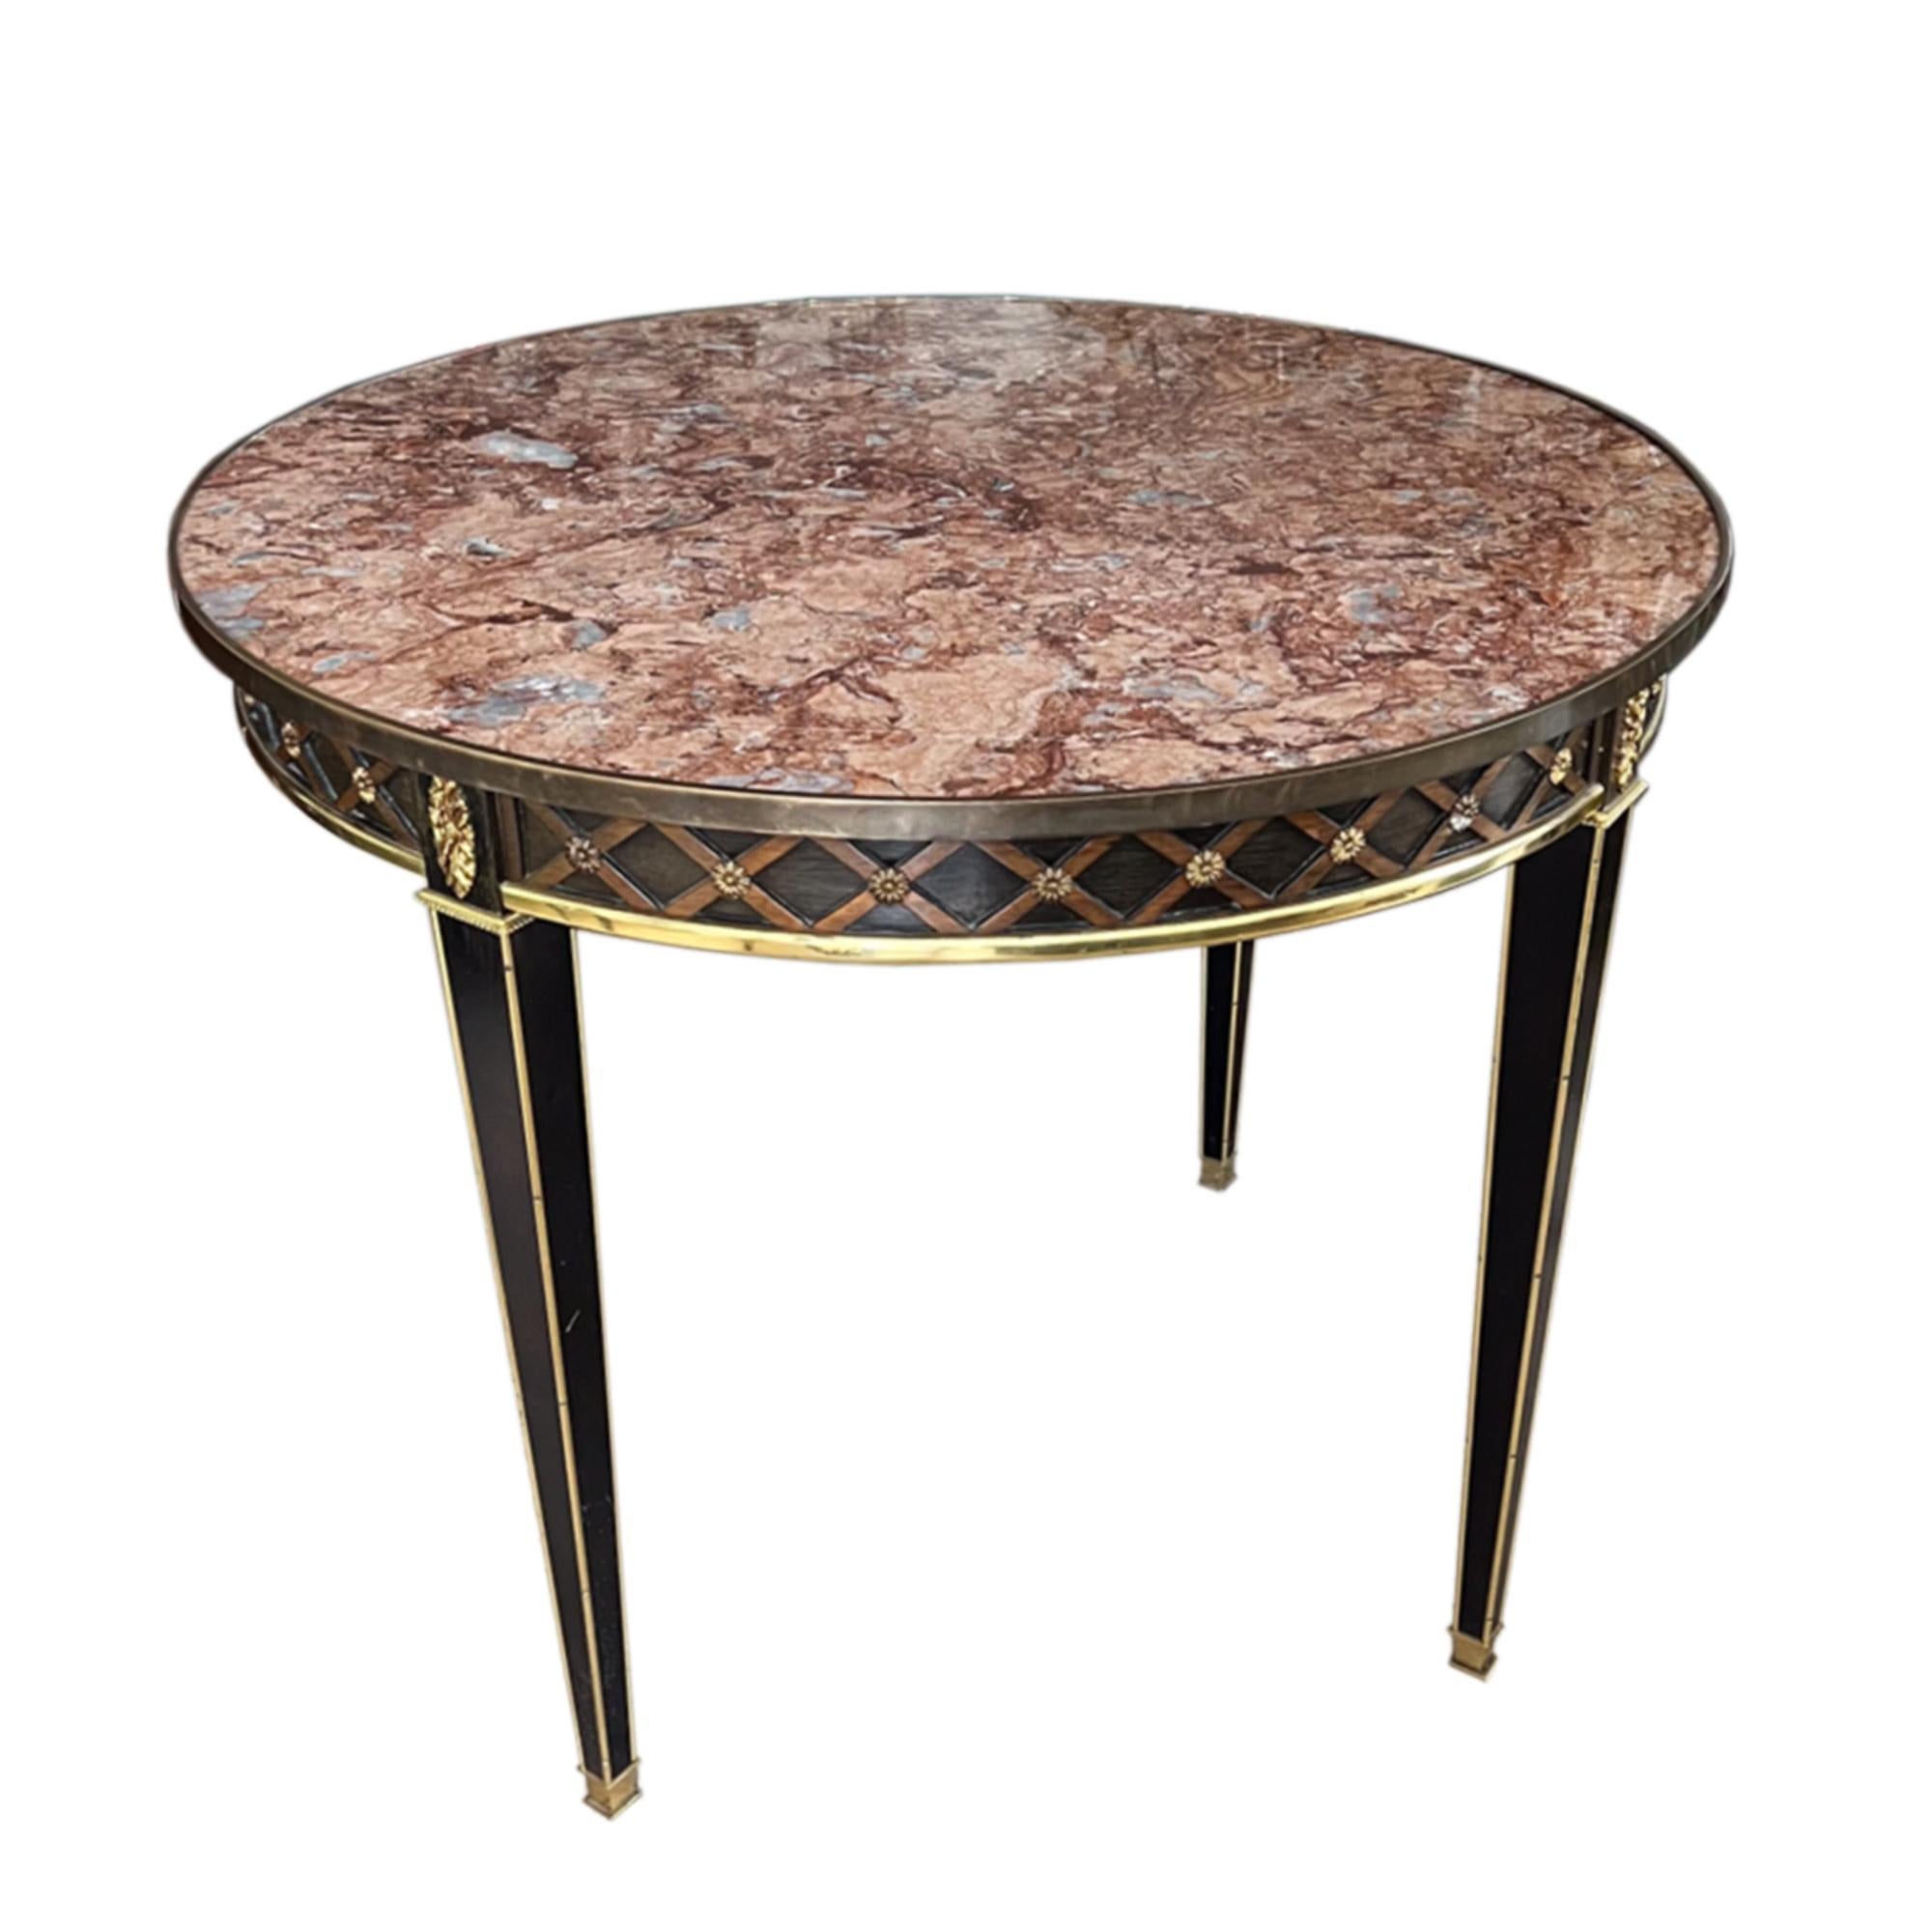 Dieser äußerst dekorative Mitteltisch wurde in den 1930er Jahren in Frankreich nach einem neoklassischen Entwurf hergestellt. 

Er besteht aus ebonisiertem Holz und einer schönen Marmorplatte mit Messingdetails und einem Harlekin-Relieffries.